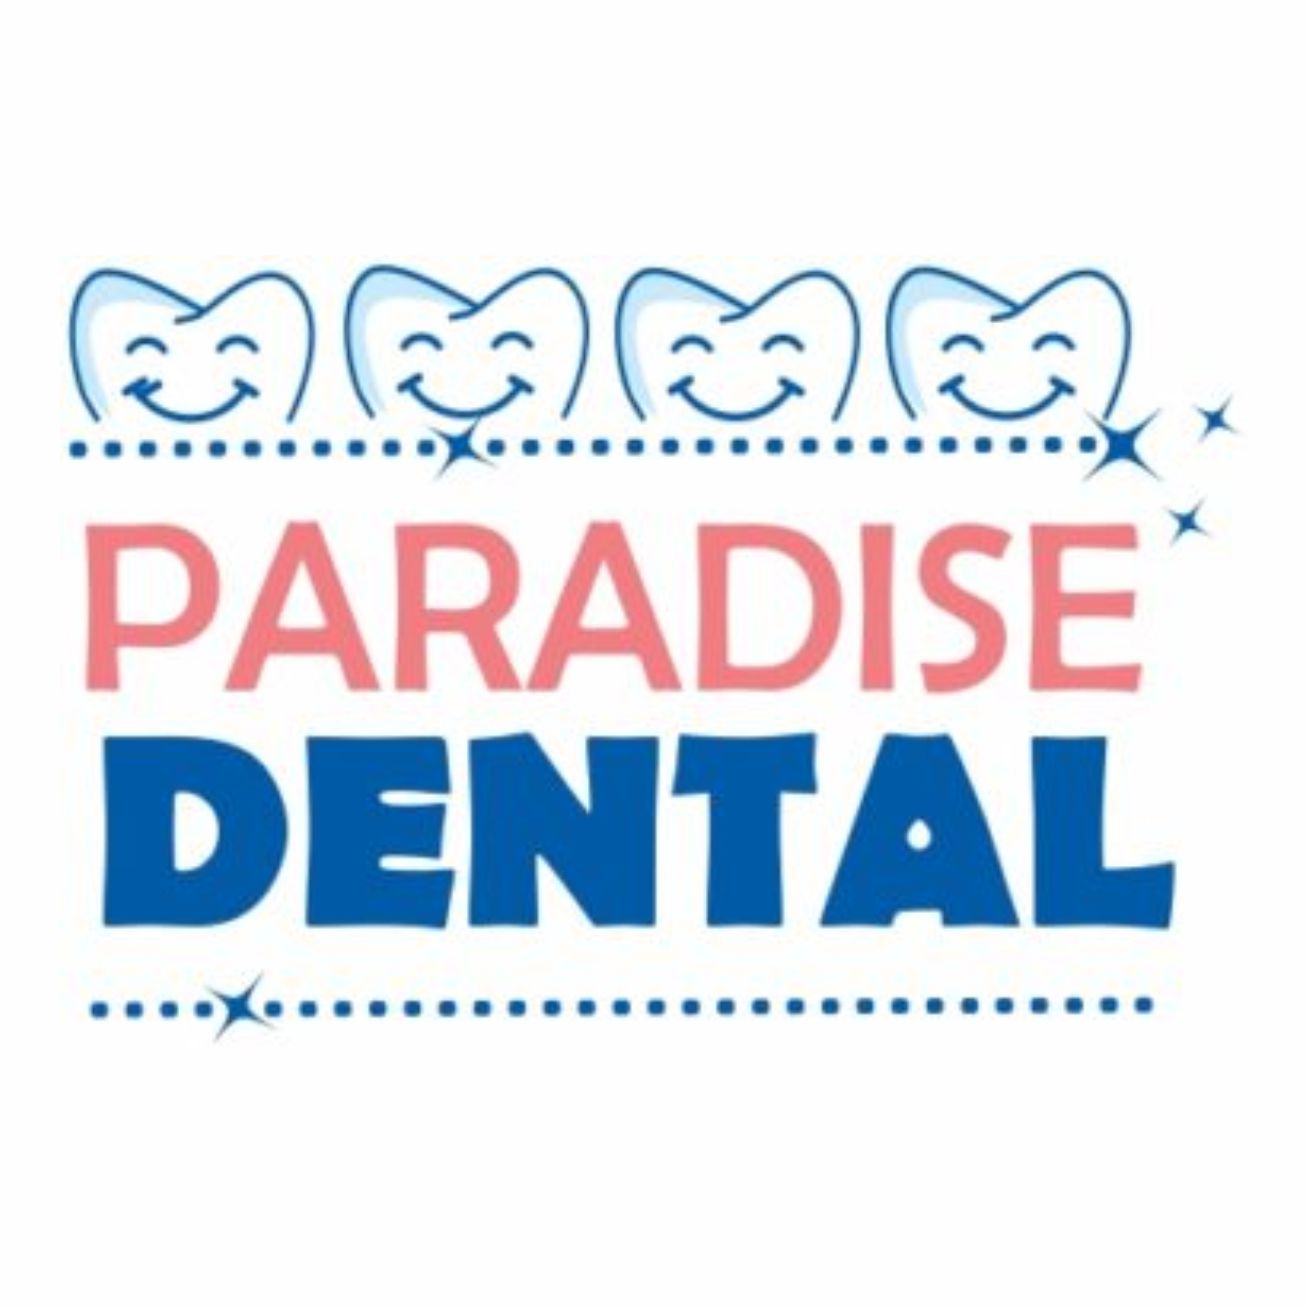 Paradise Dental